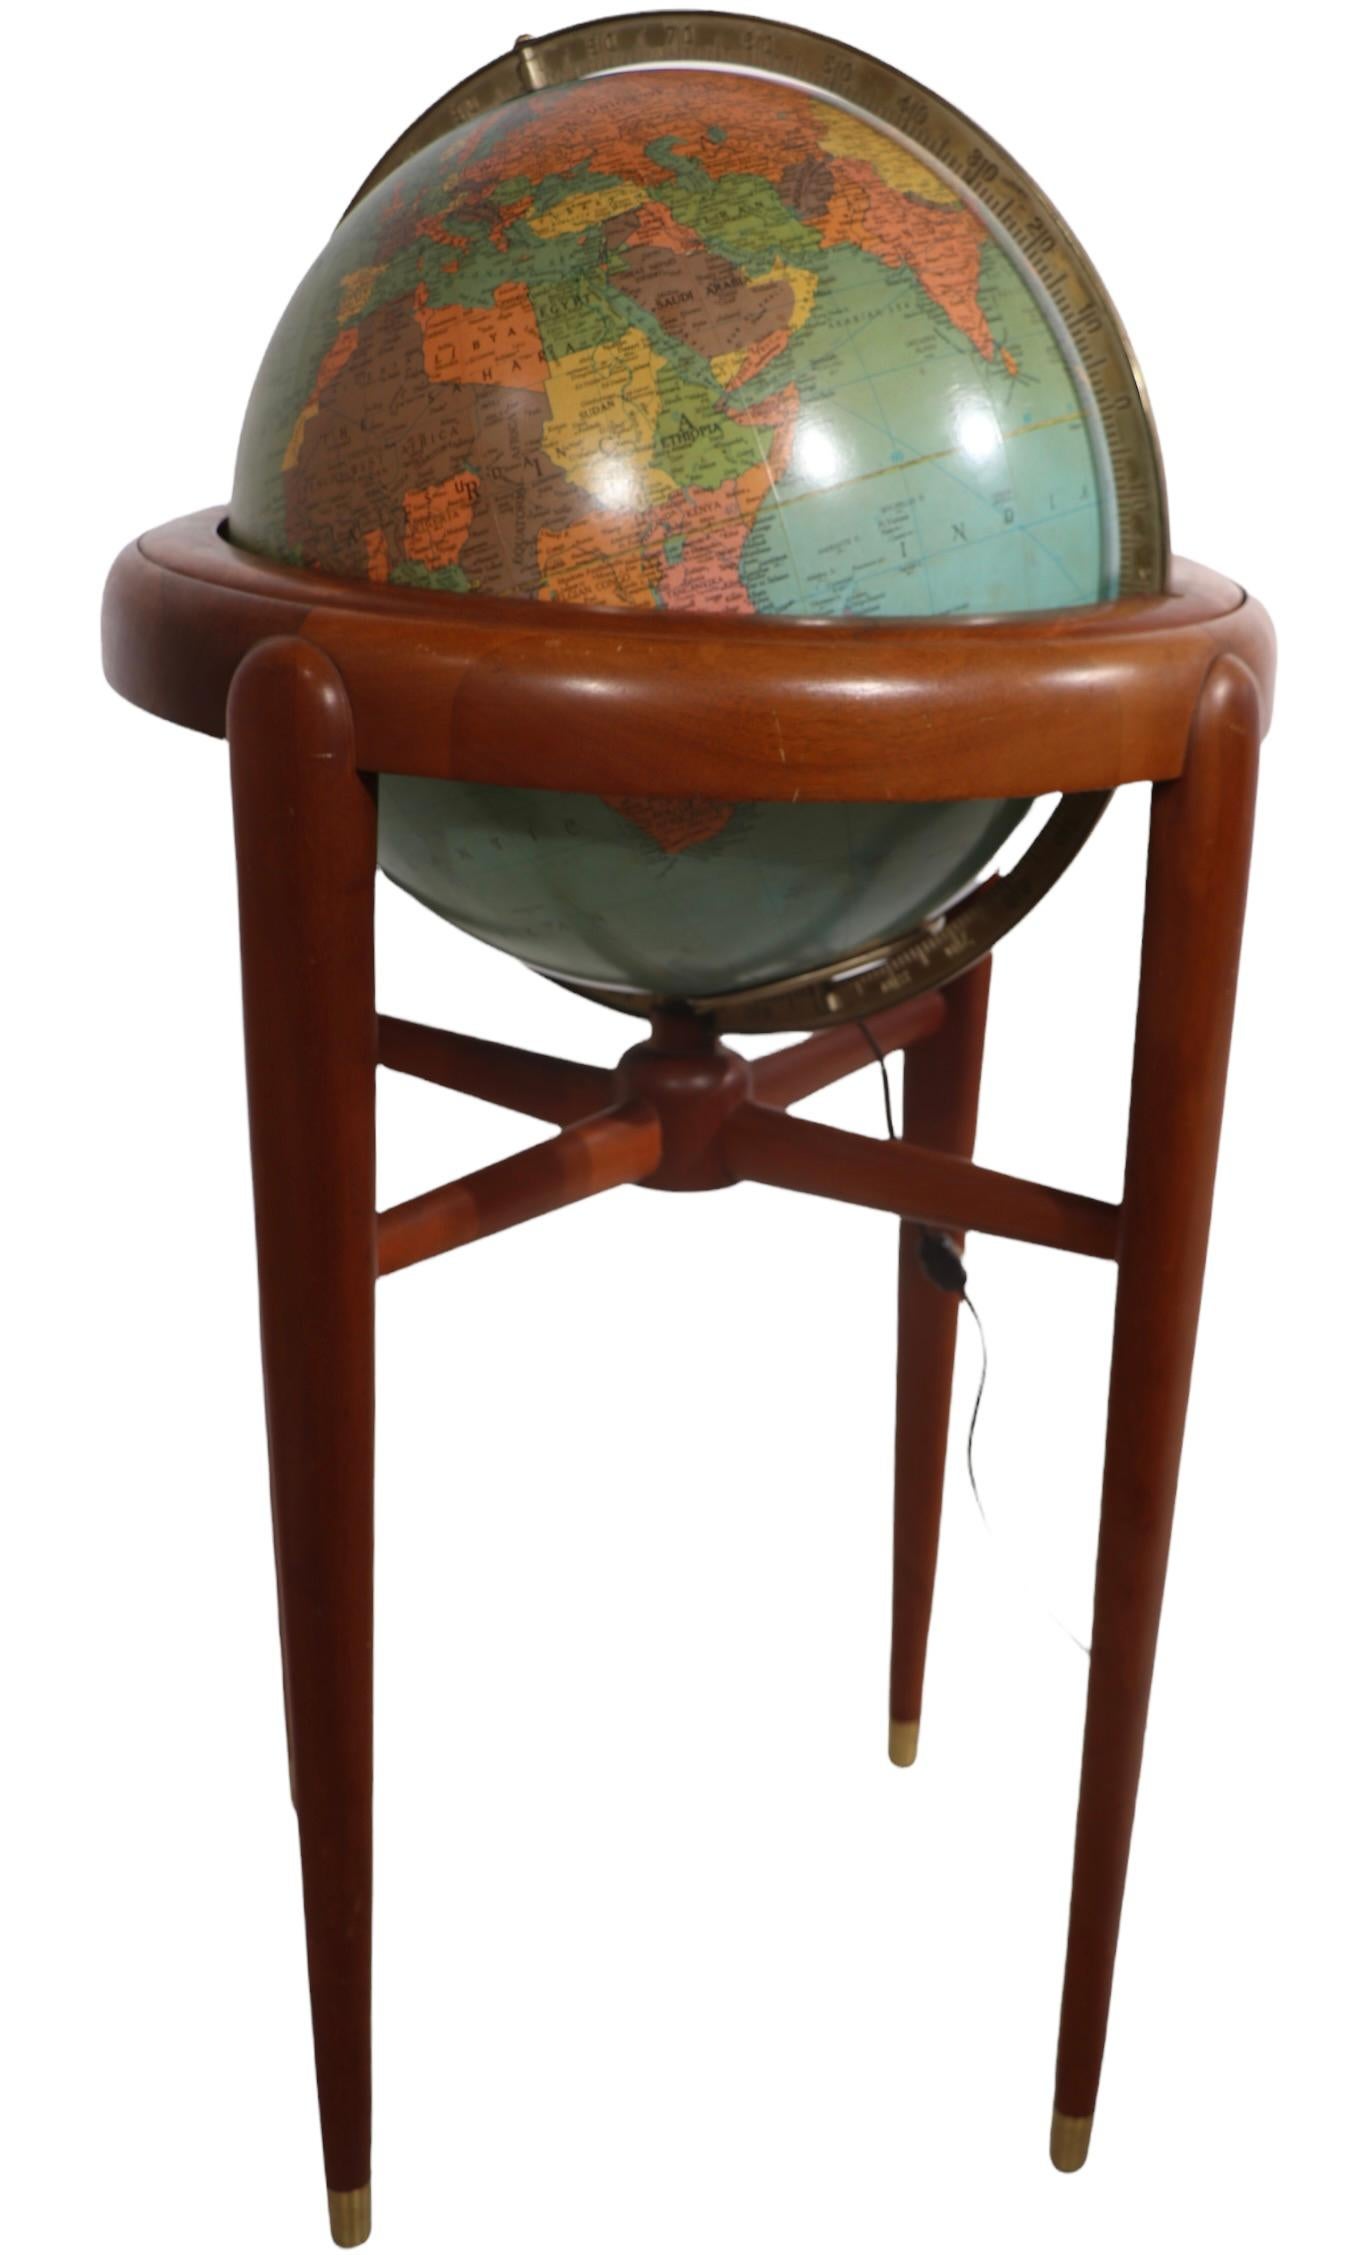 Exceptionnel globe lumineux de modèle de plancher, par Replogle Globes Inc. Le globe mesure 16 pouces de diamètre, il est doté d'une lumière intérieure et repose sur un cadre en acajou massif. Cet exemple est en très bon état, original, propre et